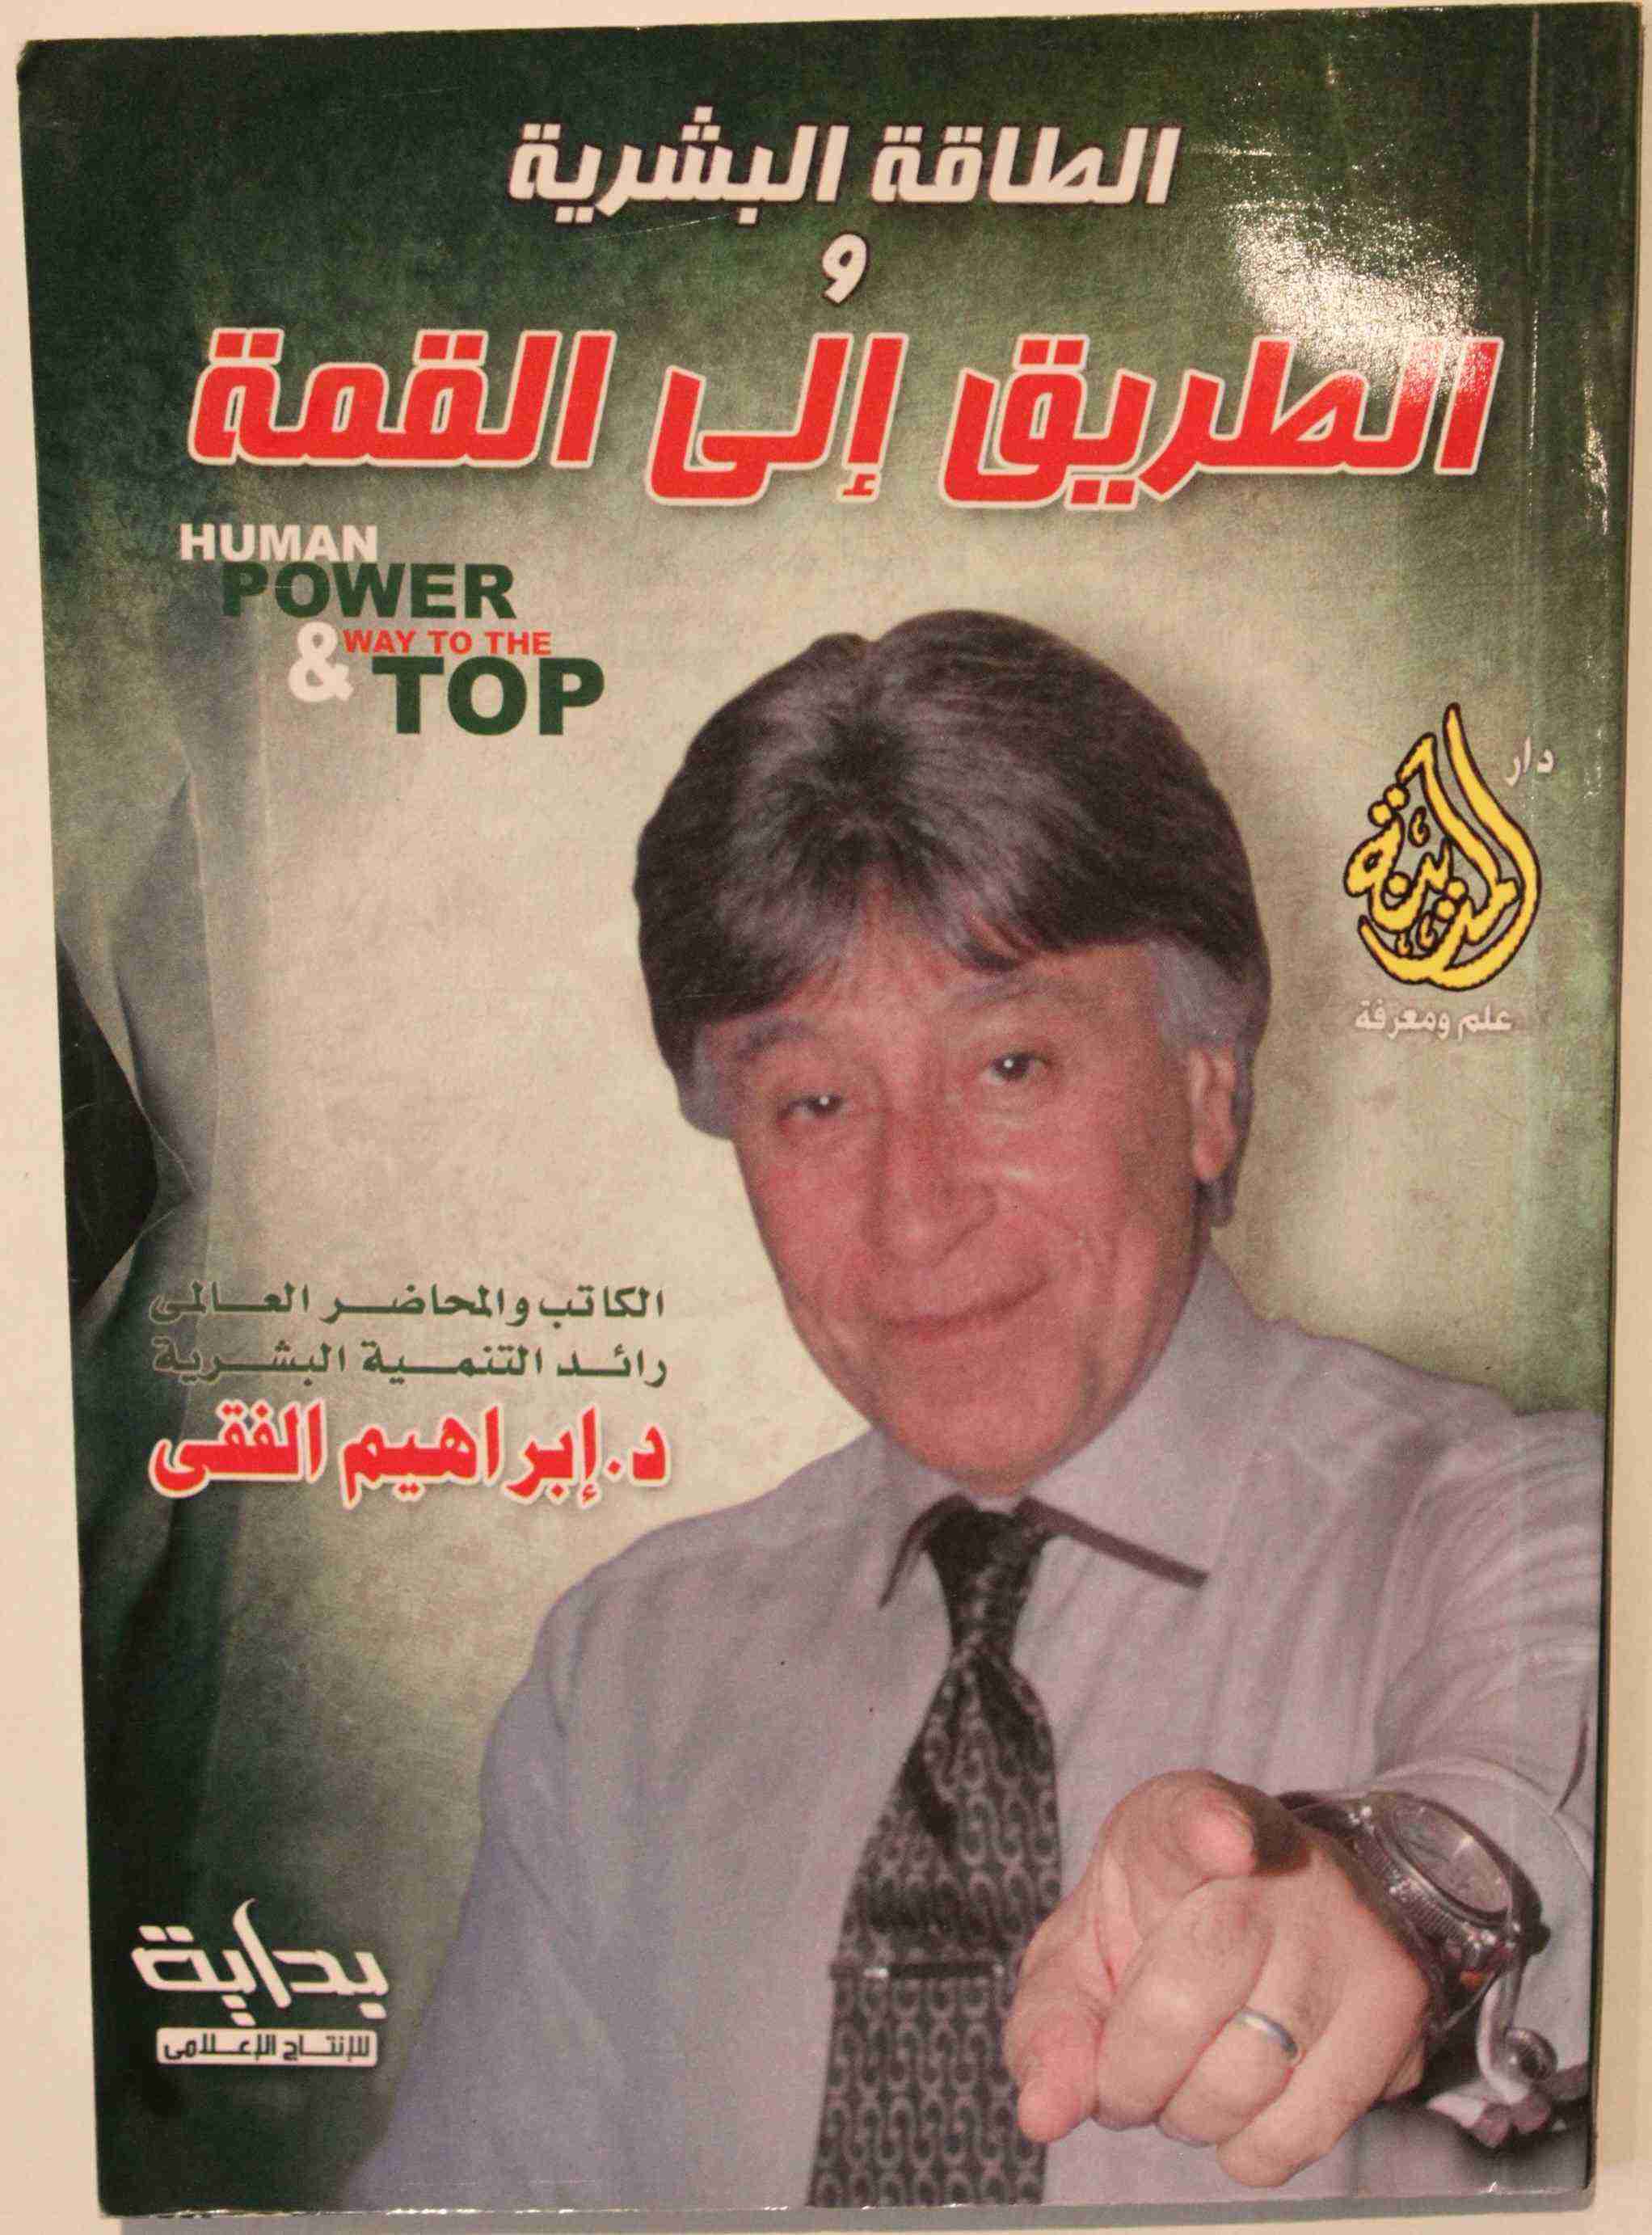 كتاب الطاقة البشرية والطريق الي القمة لـ إبراهيم الفقي